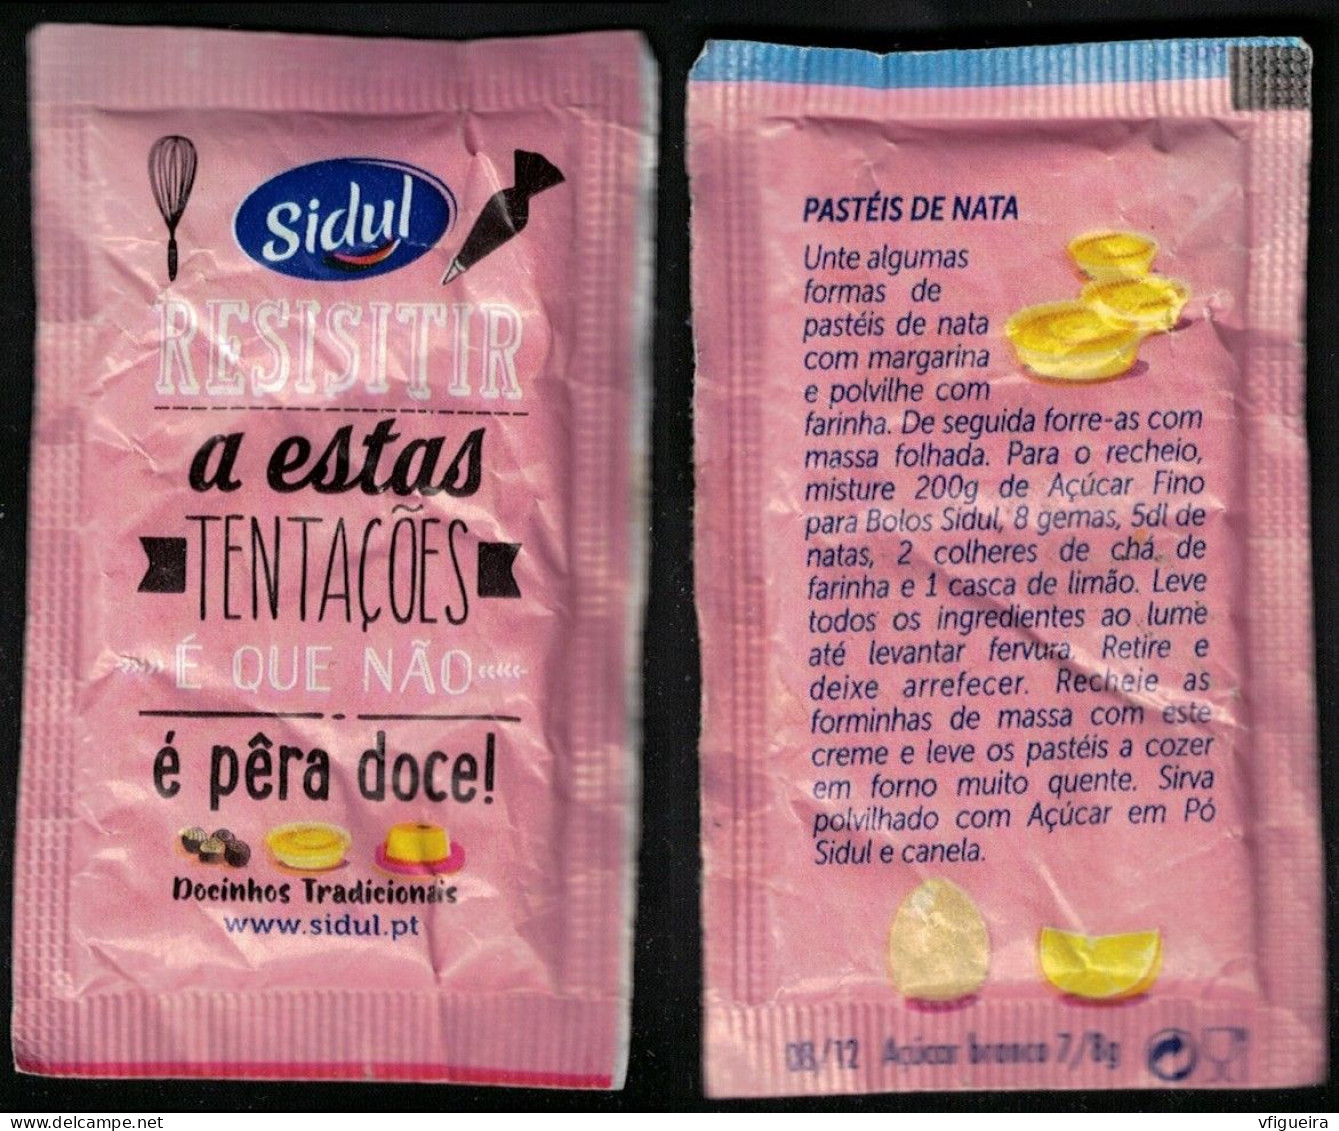 Portugal Sachet Sucre Sugar Bag Sidul Resistir A Estas Tentações é Que Não é Pêra Doce Pastéis De Nata - Zucchero (bustine)